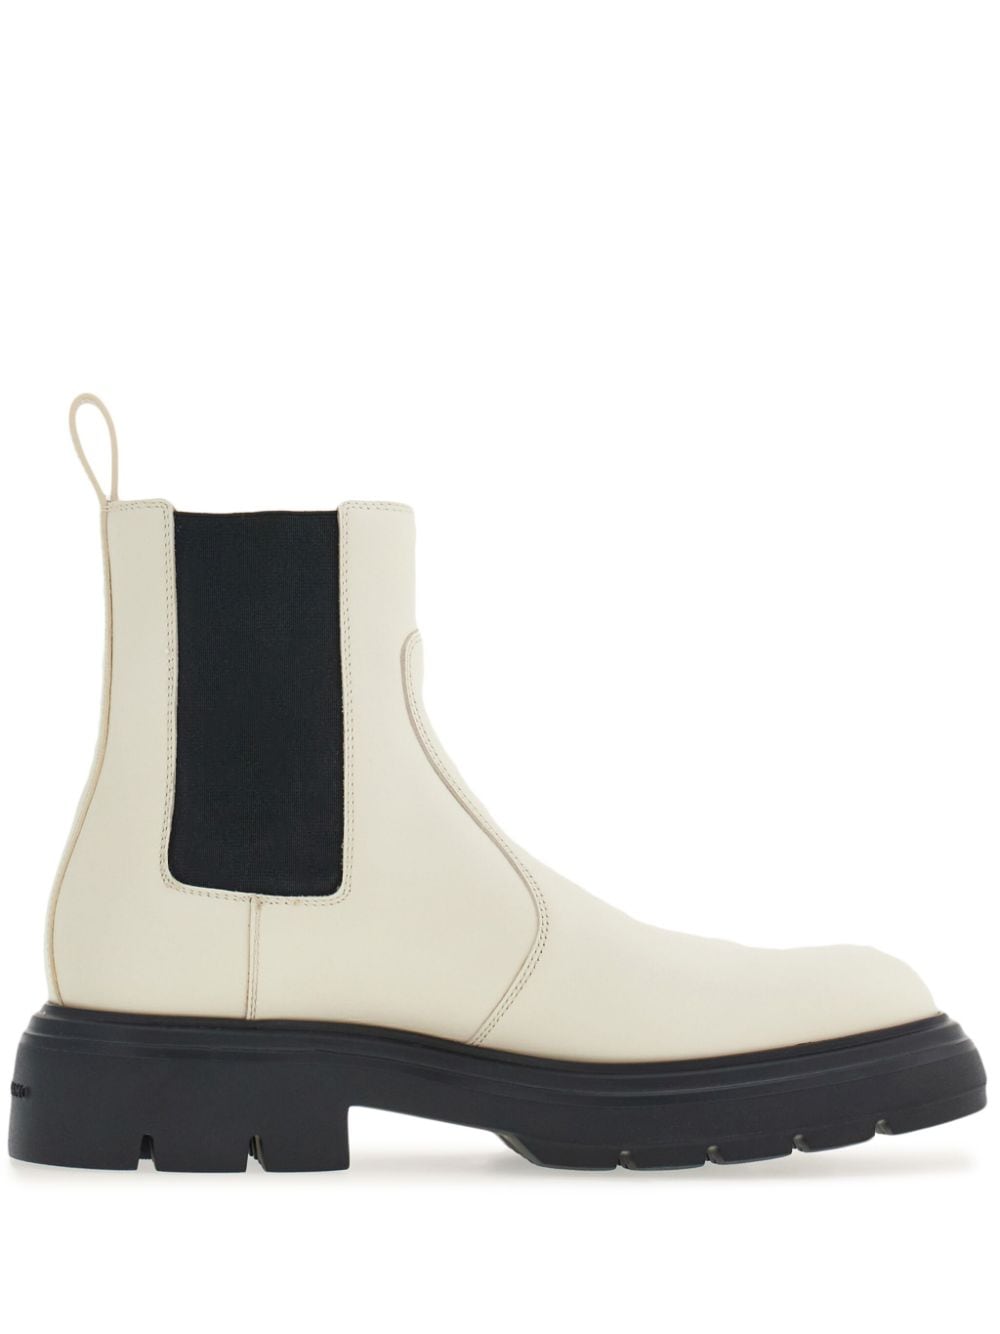 Ferragamo leather chelsea boots - White